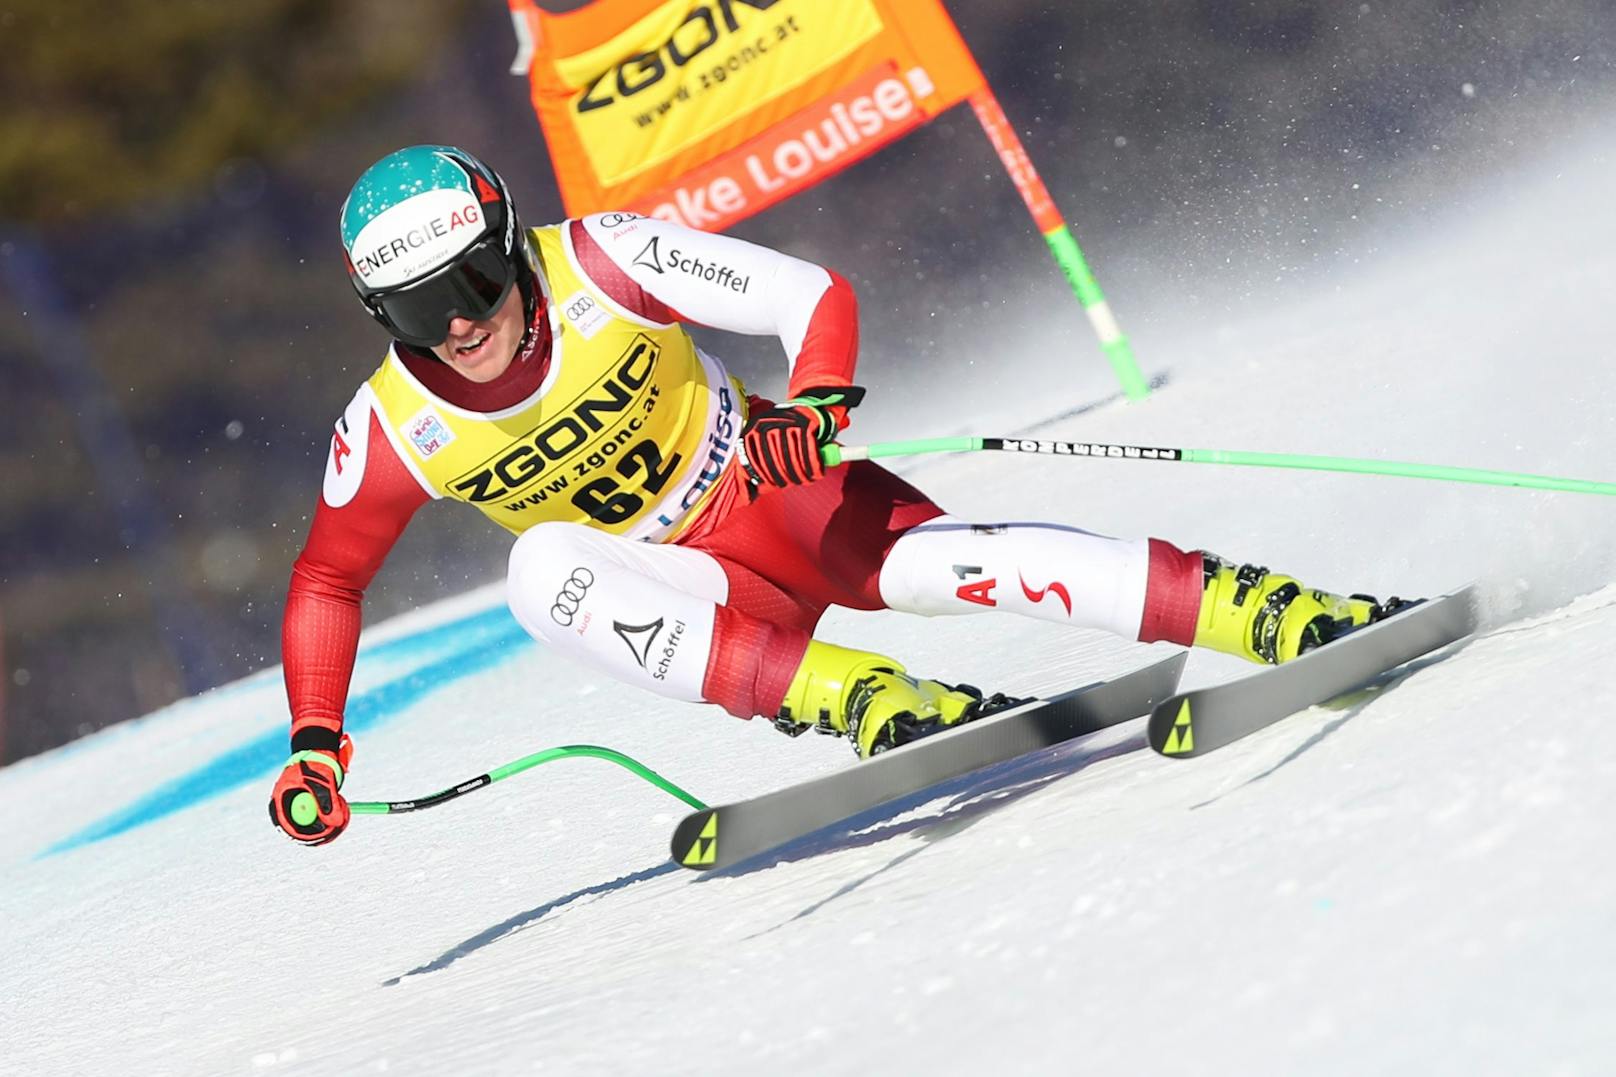 "Mental nicht bereit!" ÖSV-Ass beendet Ski-Karriere